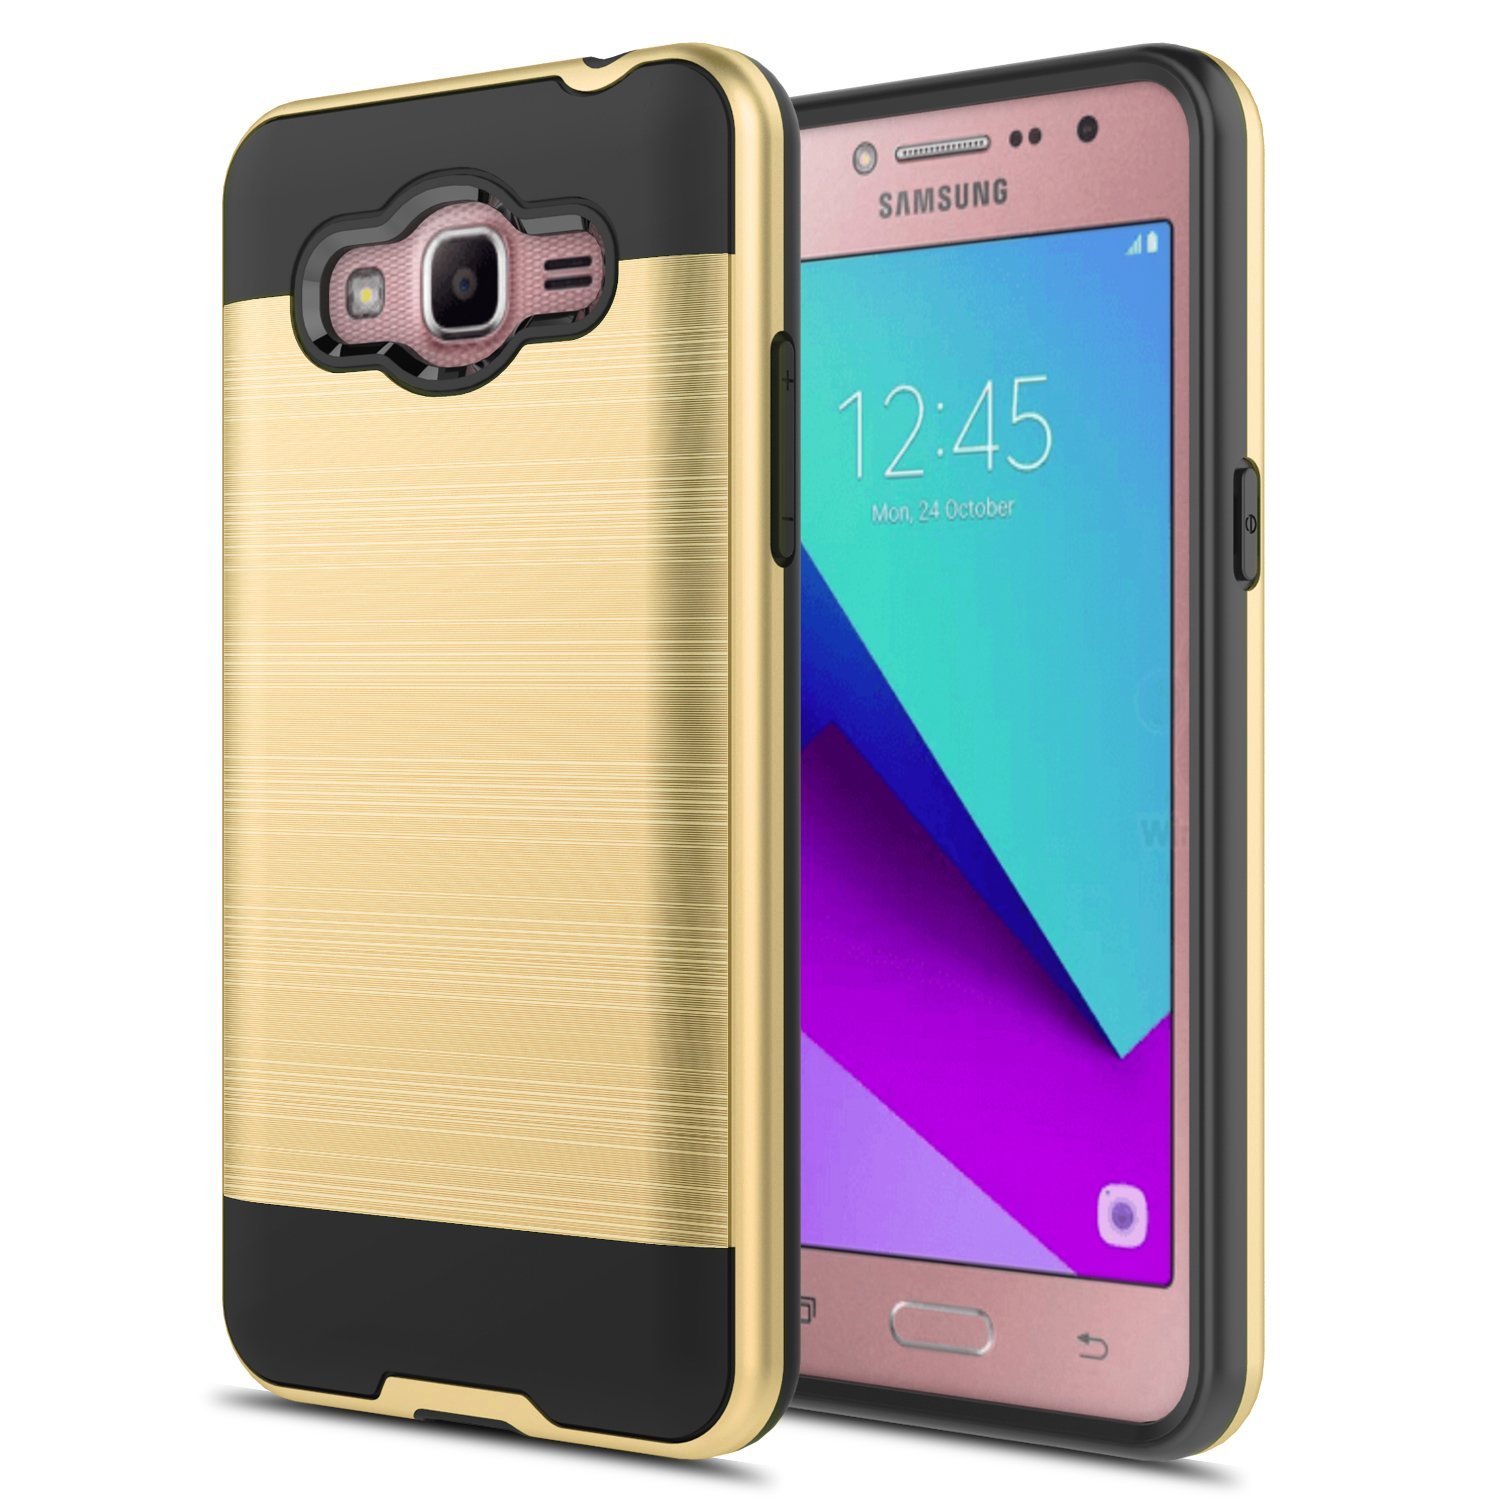 Samsung Galaxy On5 G550 Armor Hybrid Case (GOLD)